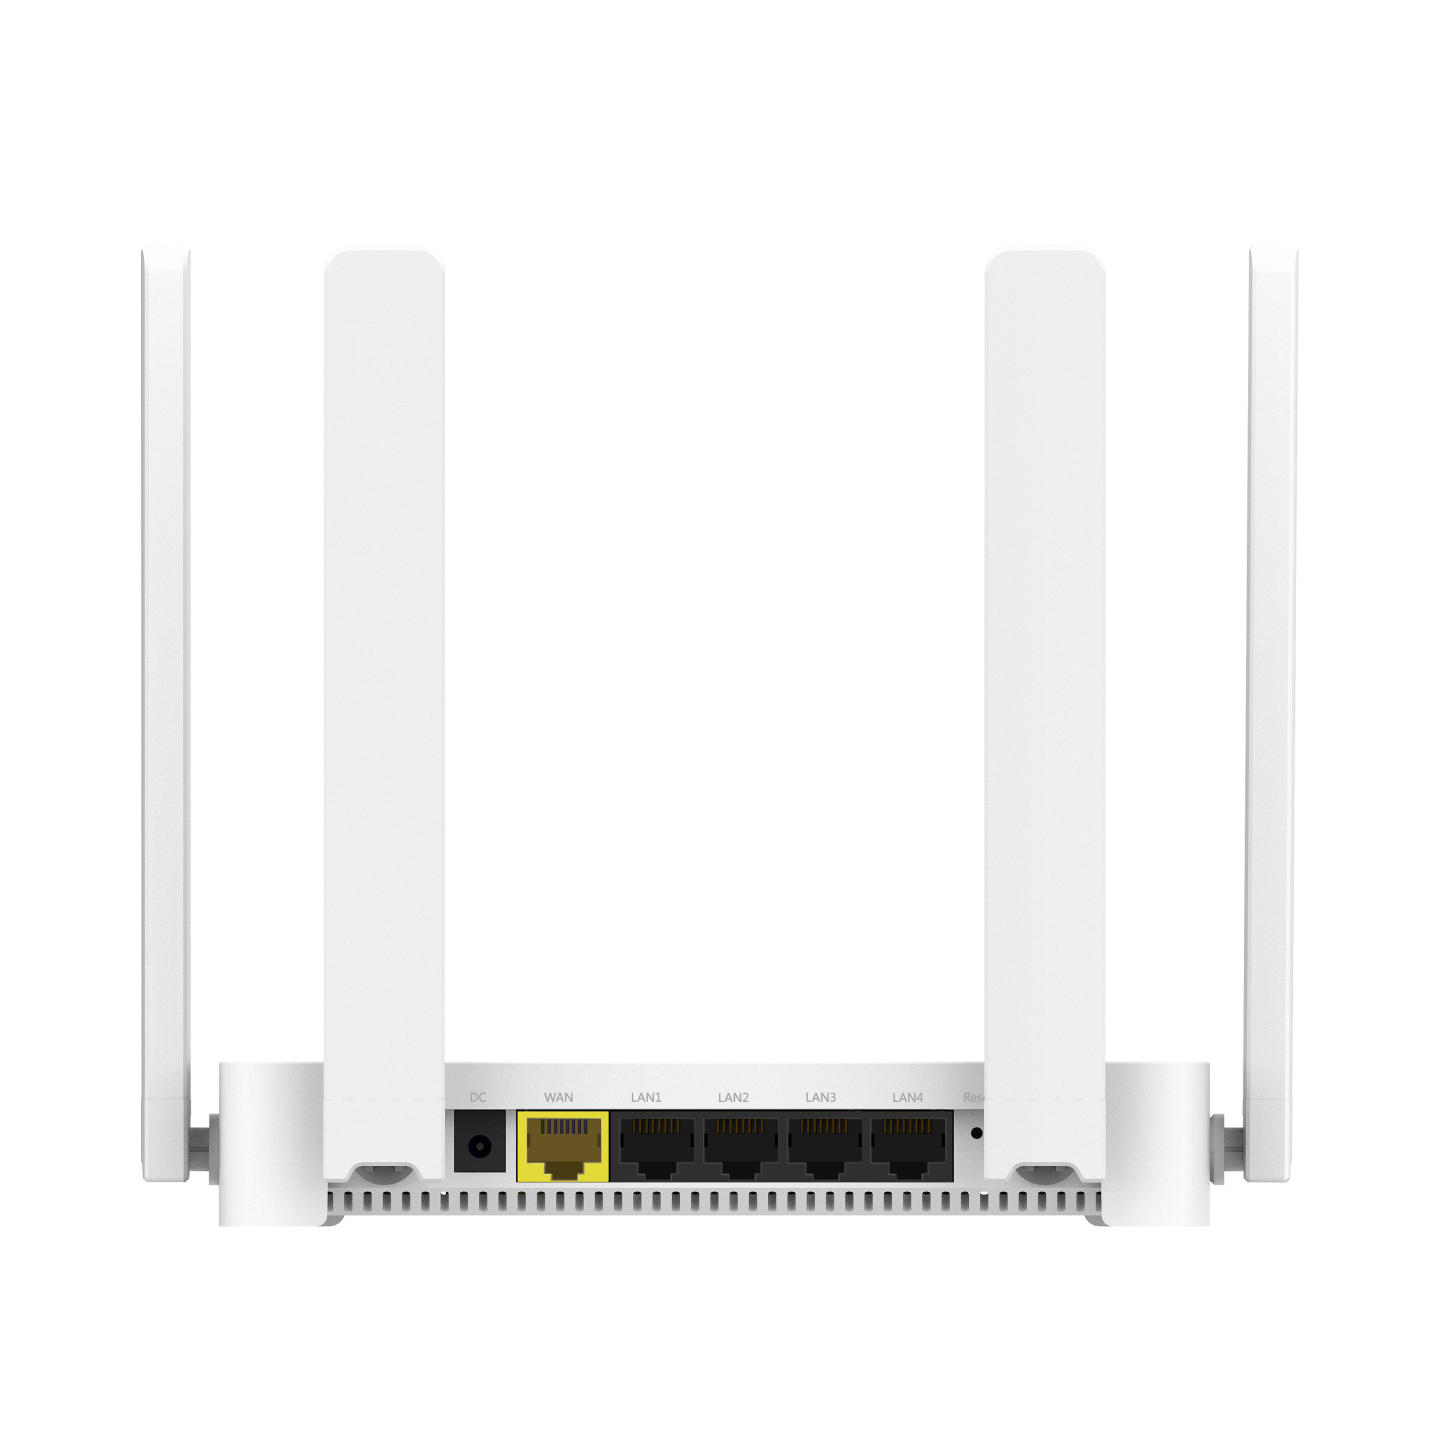 AX1800 Repetidor WiFi, WiFi 6 Repetidor WiFi Largo Alcance Banda Dual 5GHz  y 2.4GHz Amplificador Señal WiFi con 1 Puerto WAN/LAN Gigabit, 4 Antennas,  MU-MIMO, Support Modo Repetidor/Ap/Router : : Informática